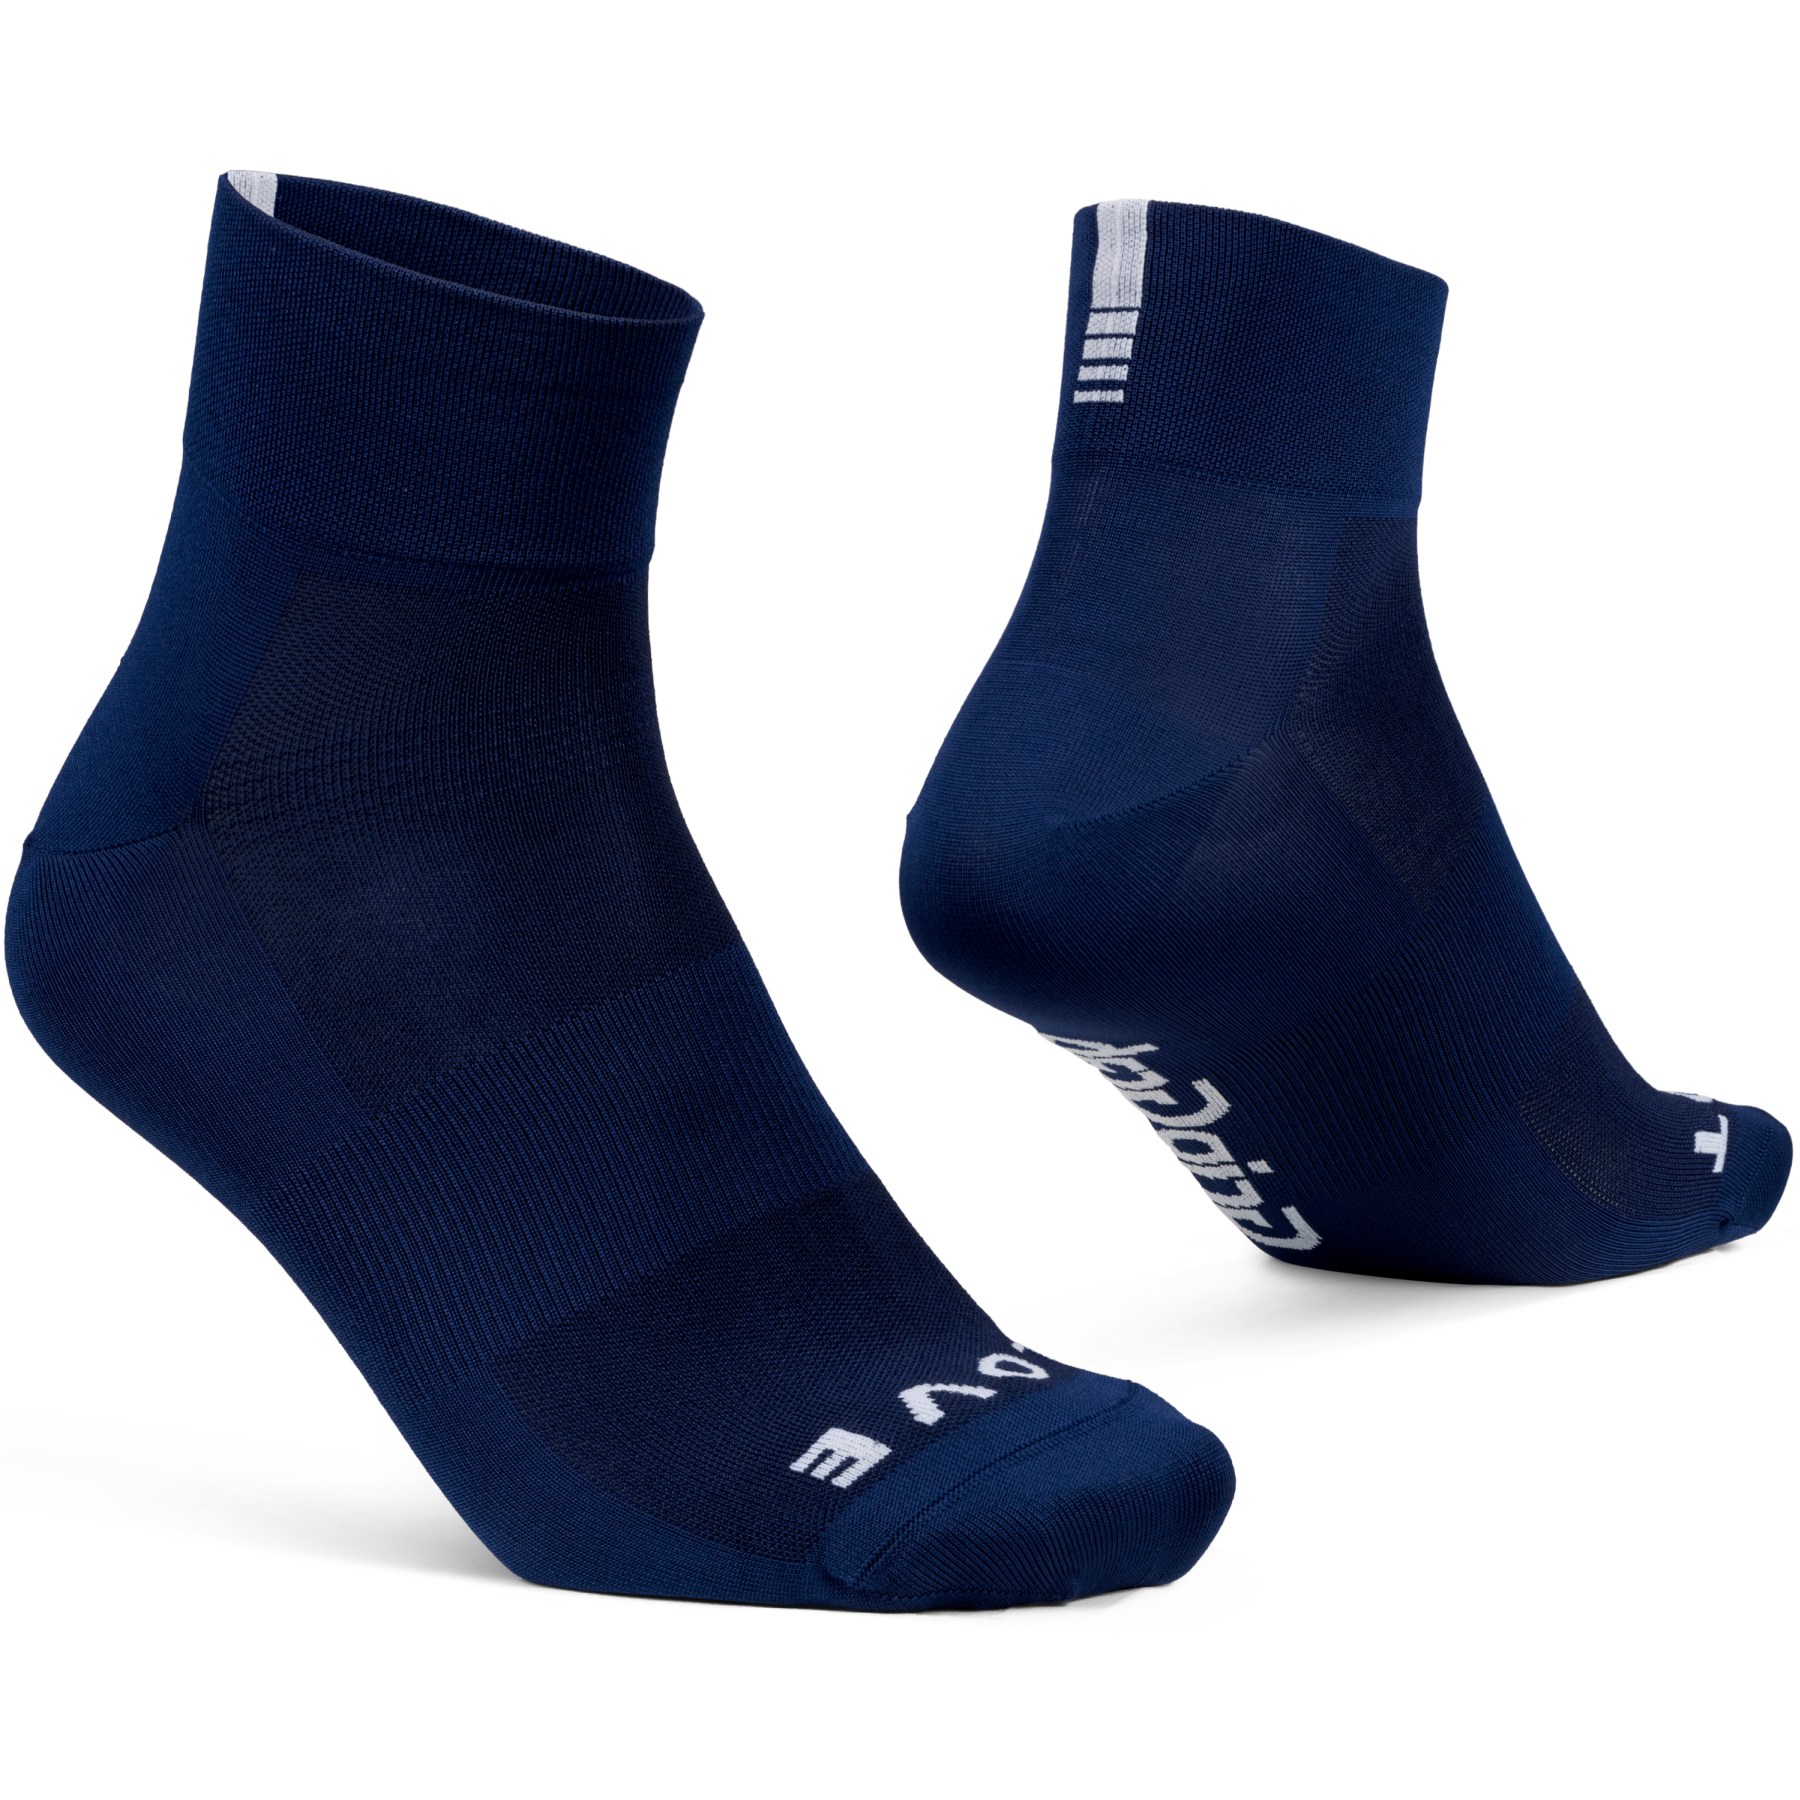 Produktbild von GripGrab Lightweight SL Short Socken - Navy Blue